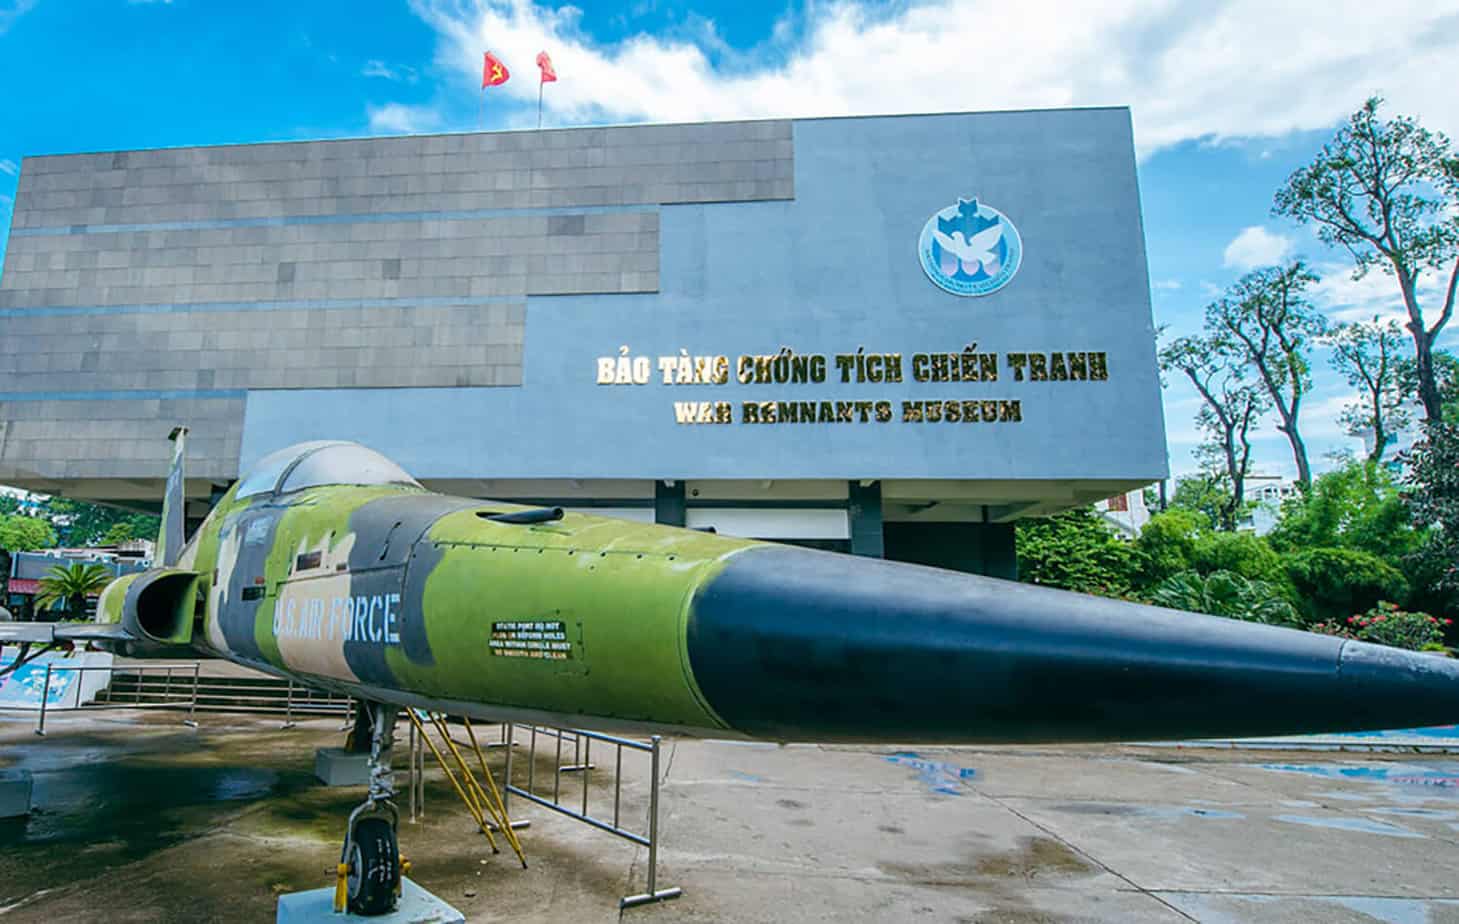 Vietnam War Sites - War Remnants Museum